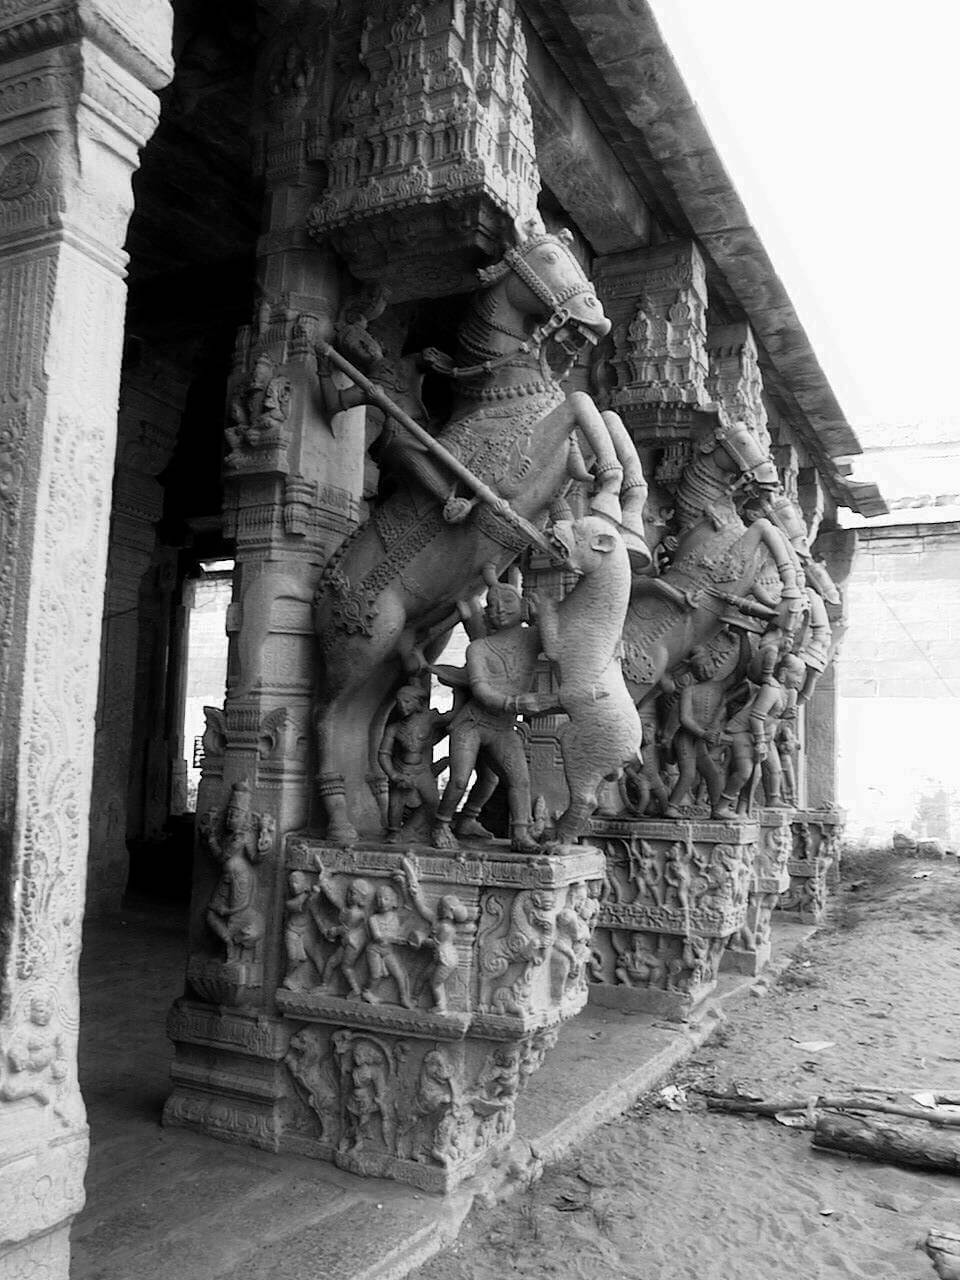 శ్రీ రంగనాథస్వామి ఆలయం 1000 స్తంభాల హాల్